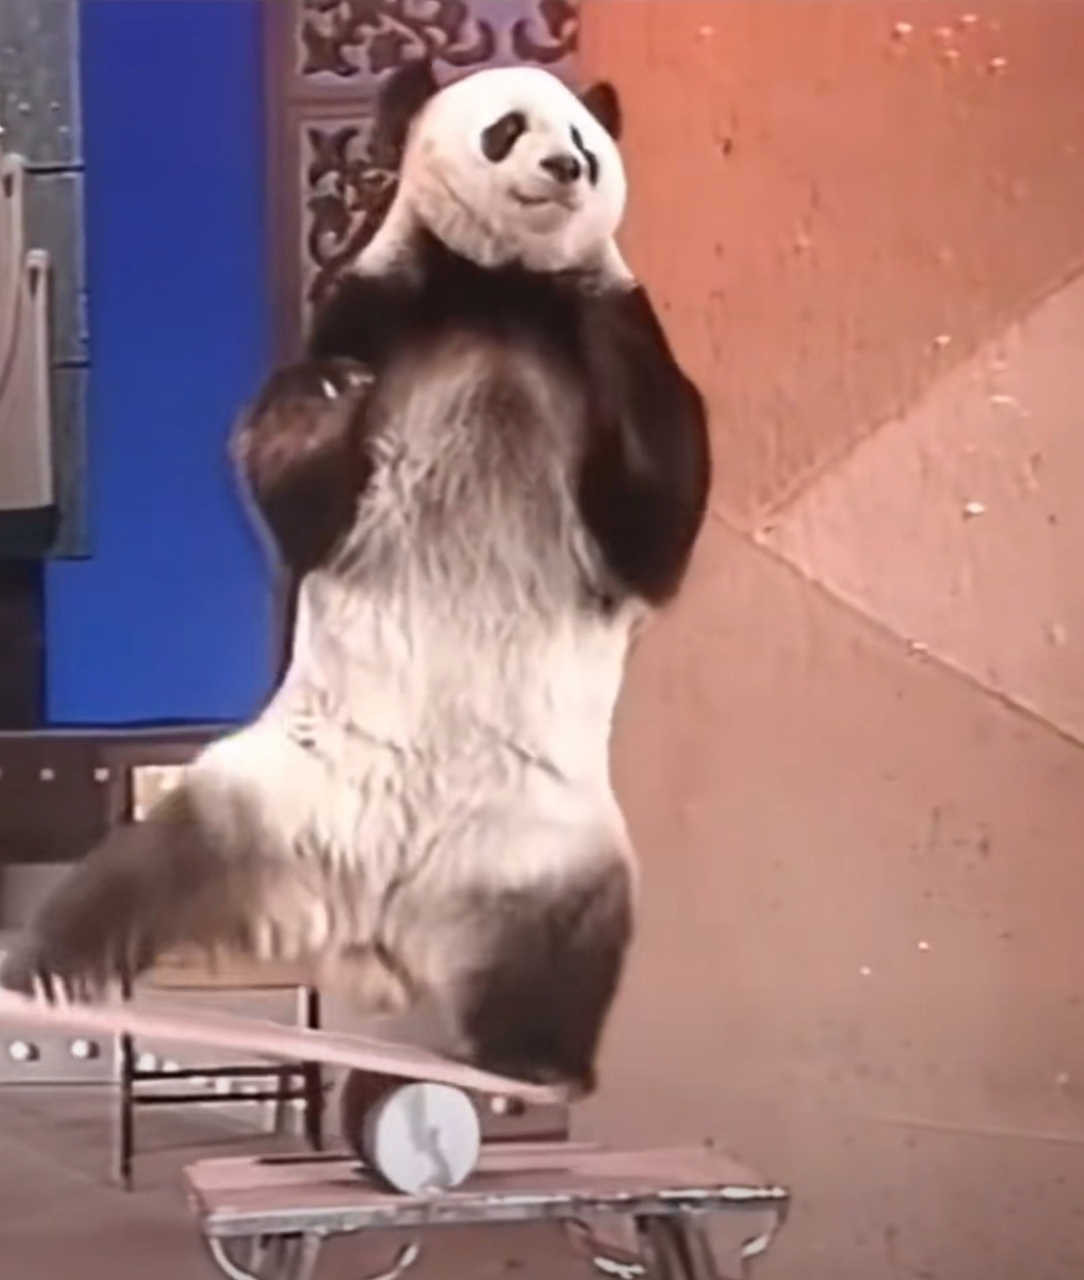 这个热爱表演杂技的熊猫叫巴斯,据说不让表演就生气 